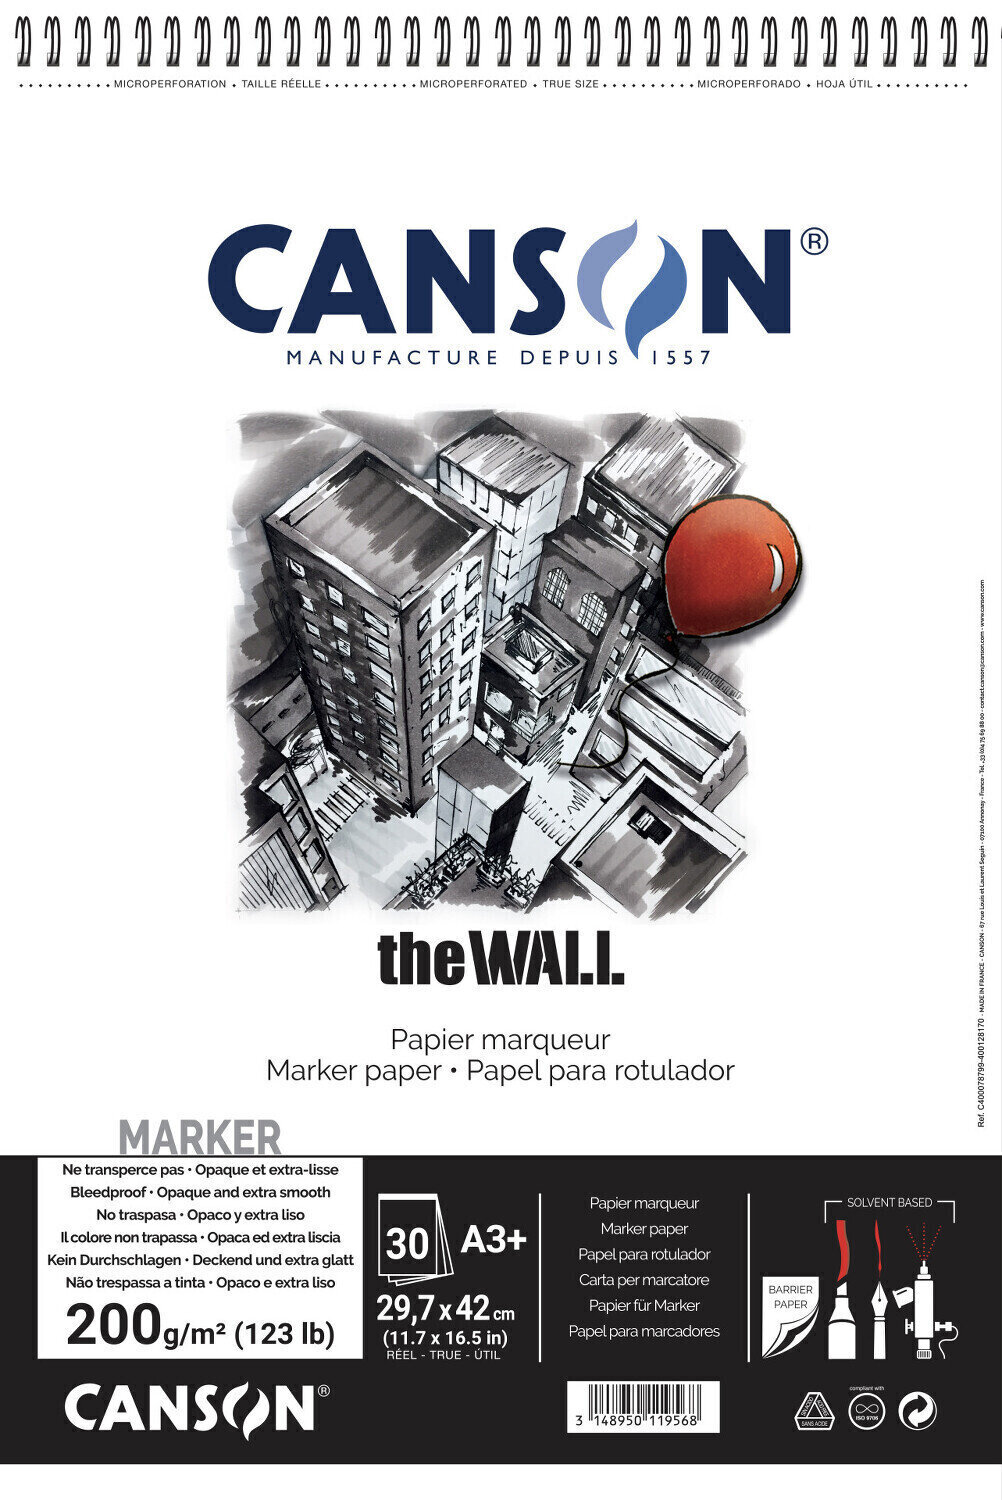 Vázlattömb Canson Sp The Wall 43,7 x 29,7 cm 200 g White Vázlattömb